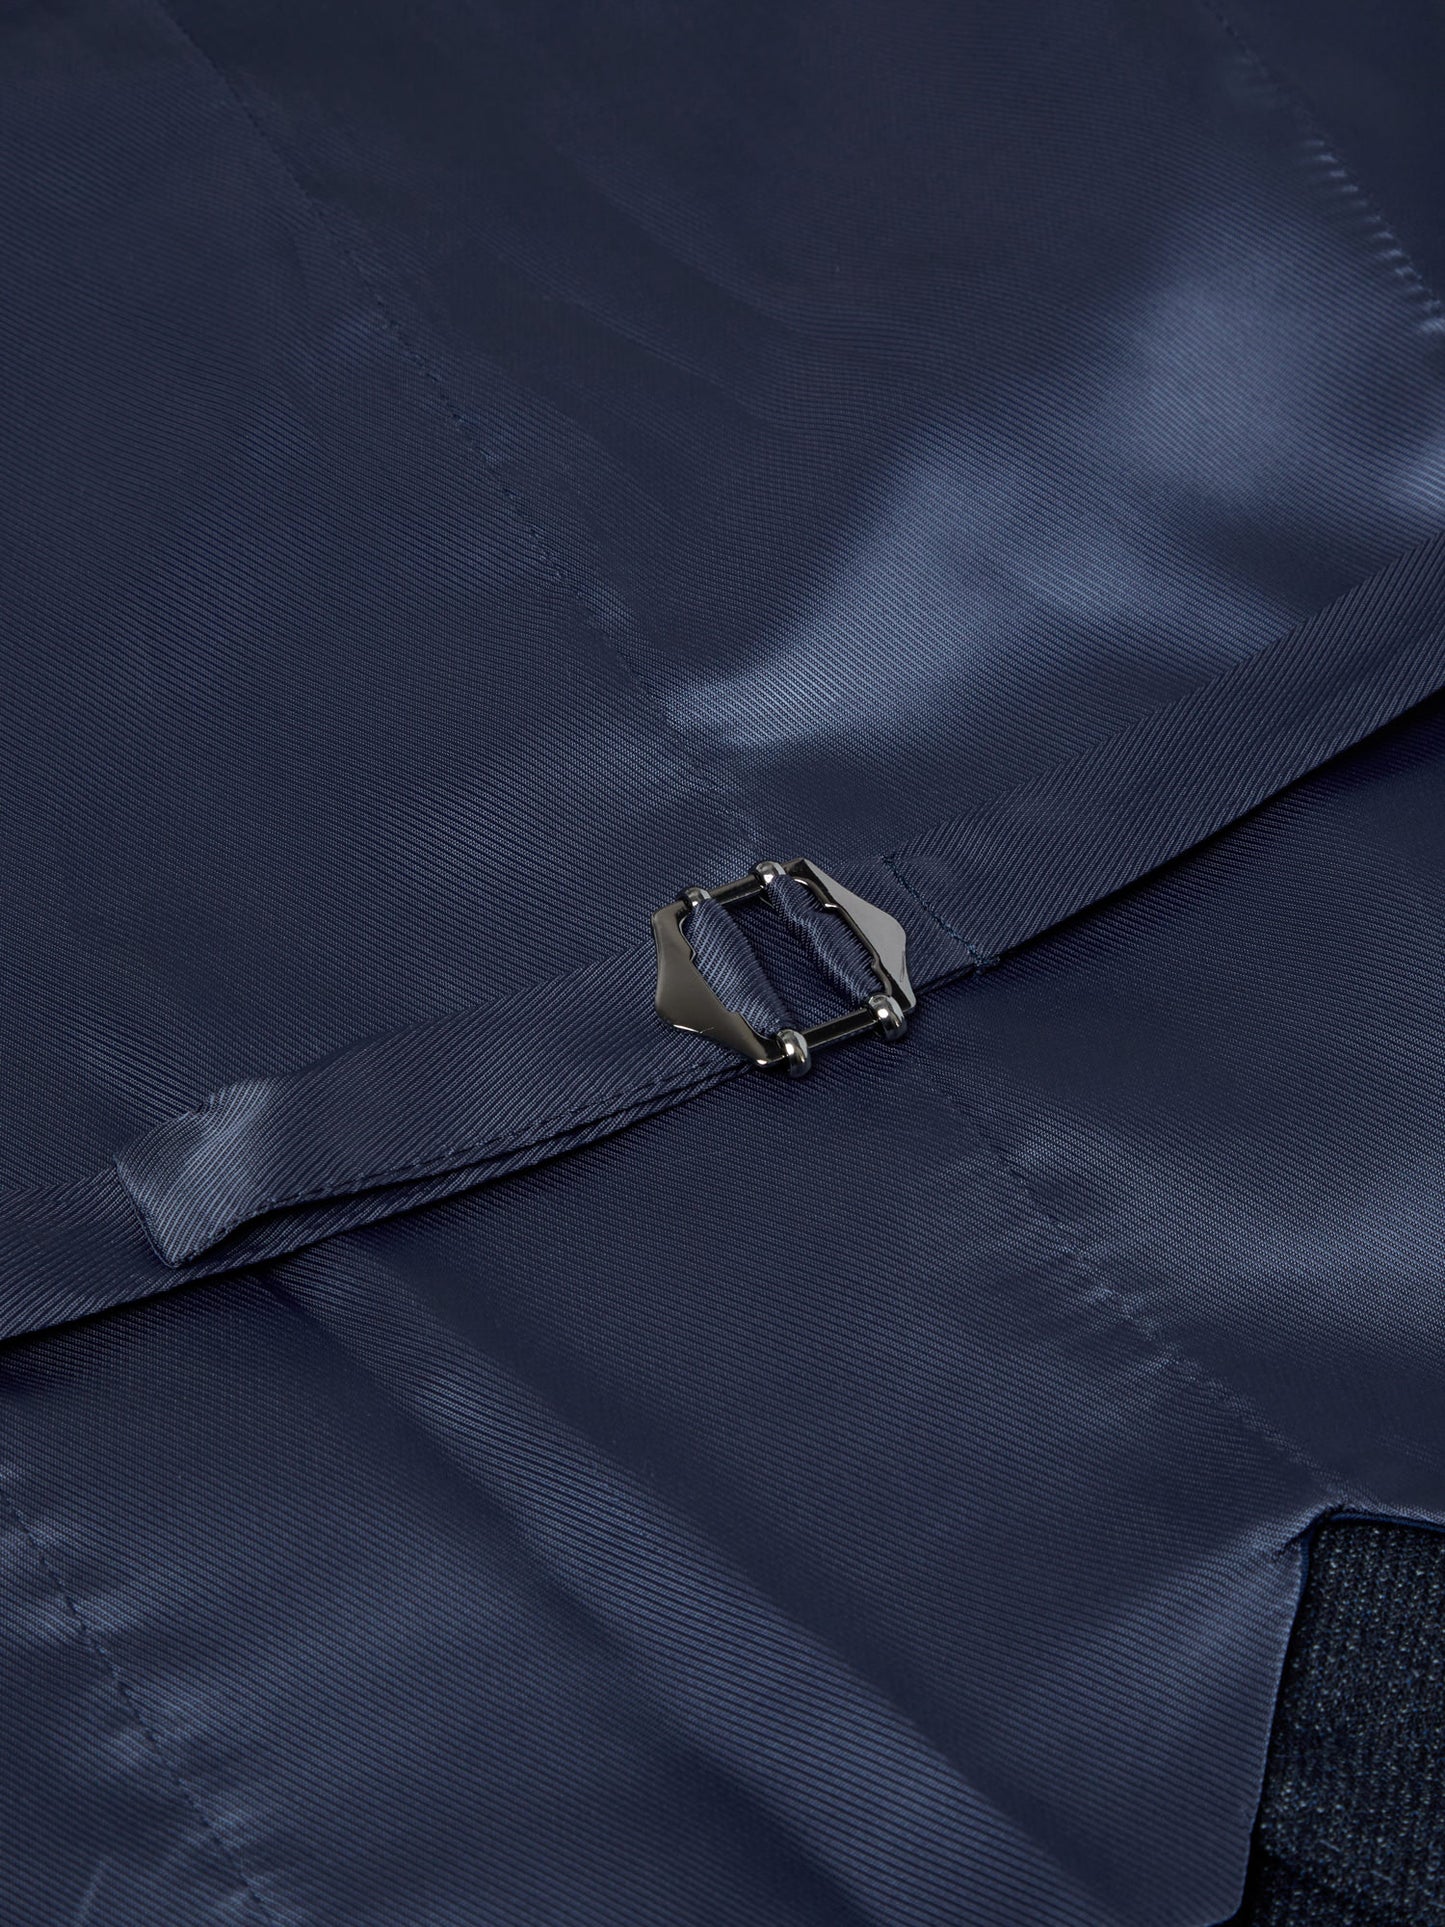 Douglas 55066 28 Slate Blue Romelo Suit Jacket